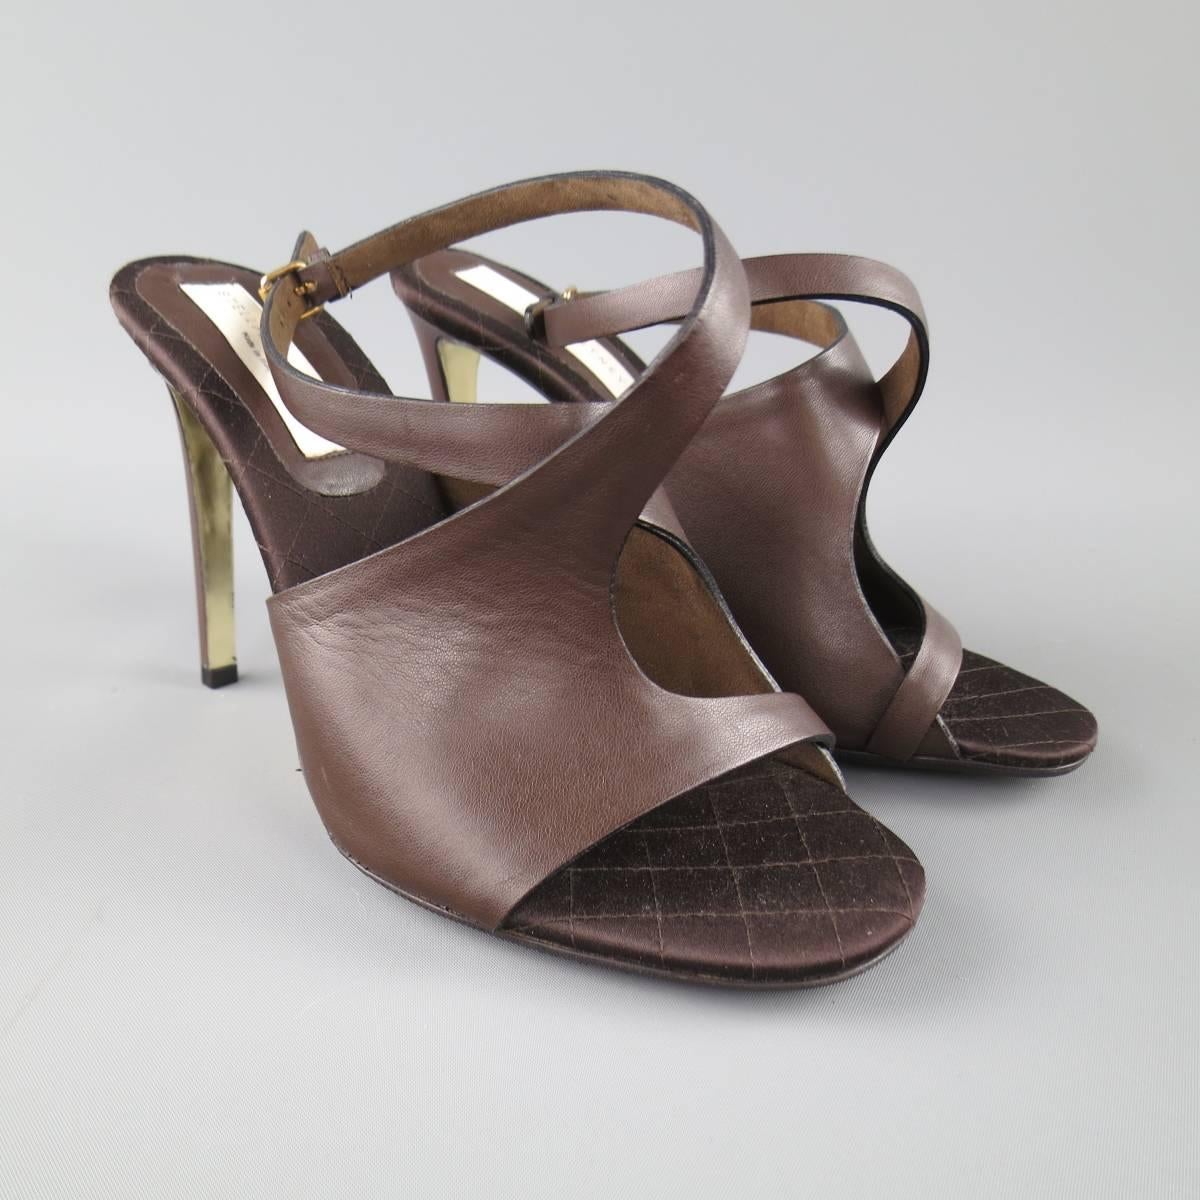 dark chocolate brown sandals